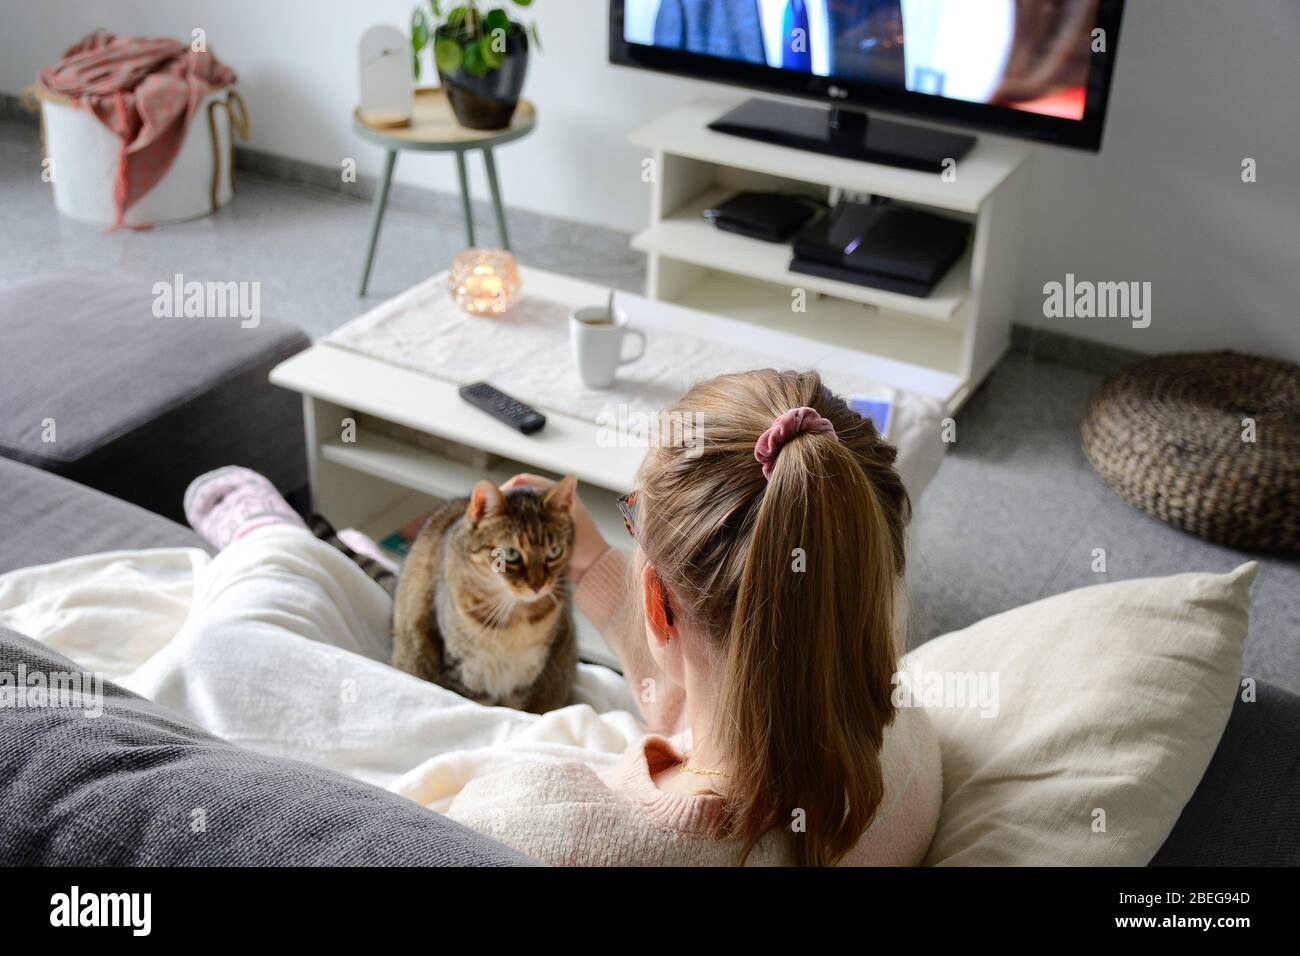 Vie domestique avec animal de compagnie à la maison. La jeune femme est assise sur le canapé dans le salon avec son chat. Elle regarde la télévision tout en strobant son chat. Regarder des bas Banque D'Images